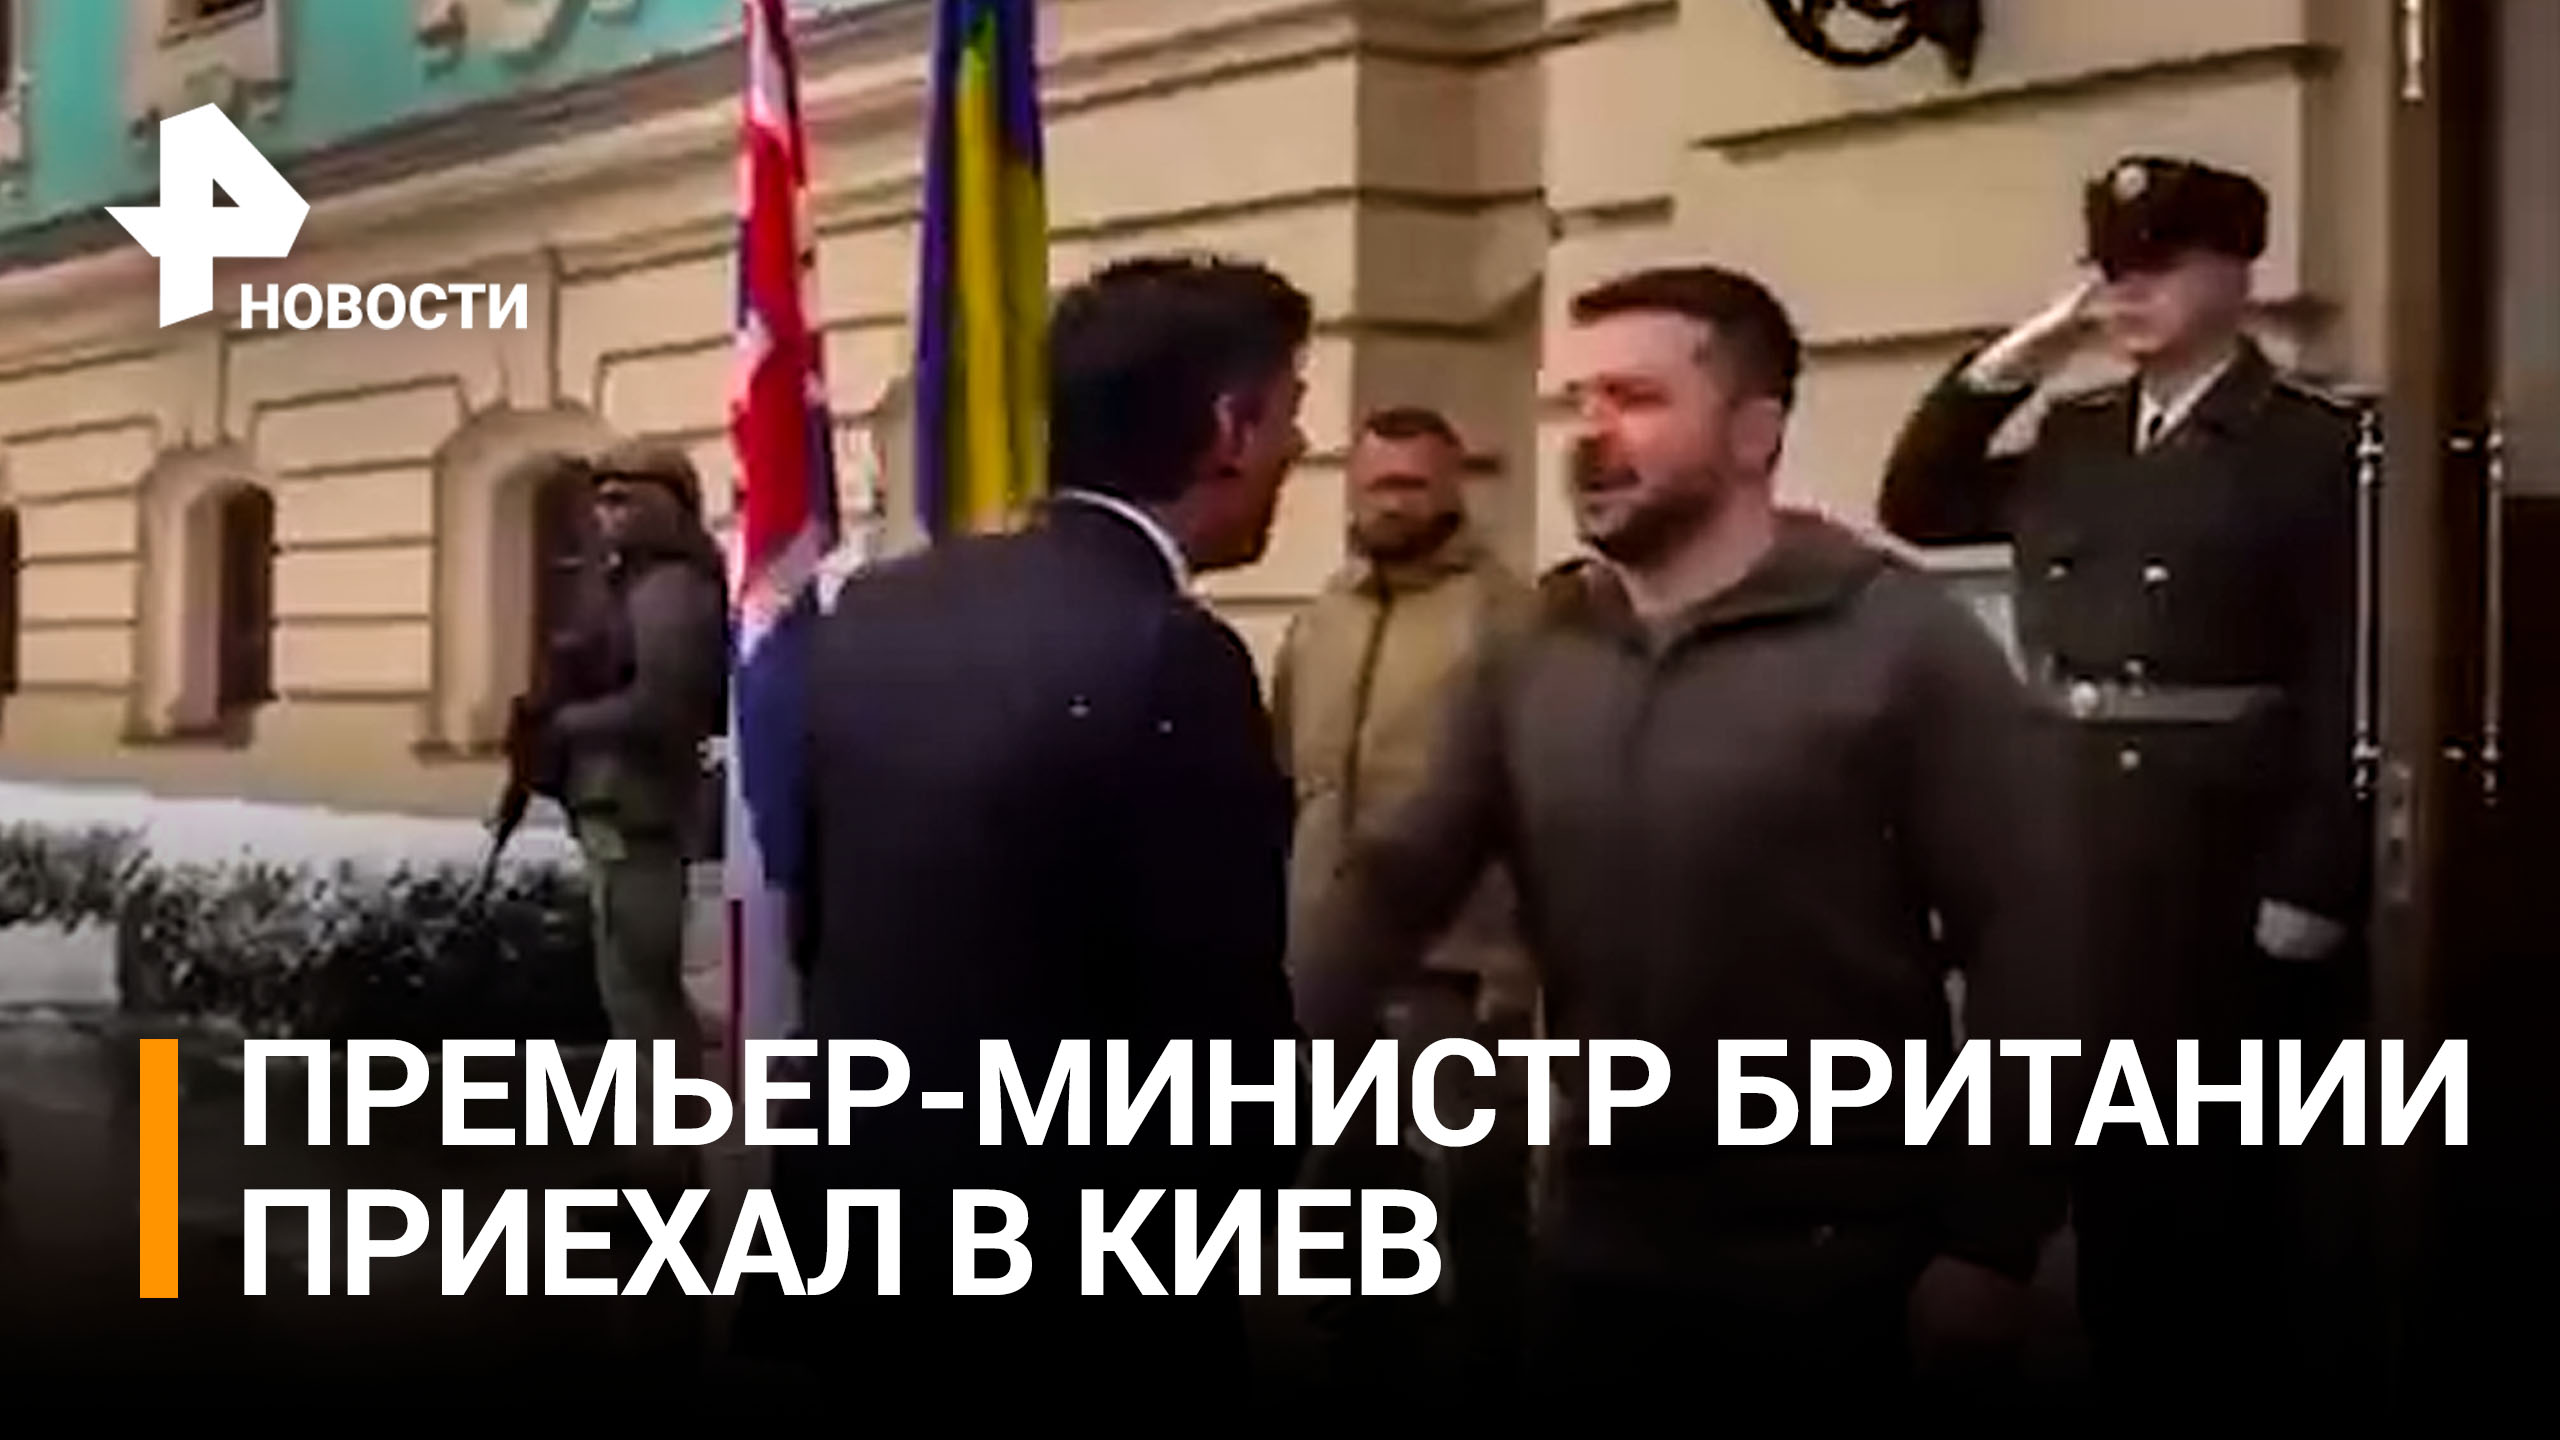 Зеленский в снегопад выбежал встречать премьер-министра Британии, прибывшего в Киев / РЕН Новости